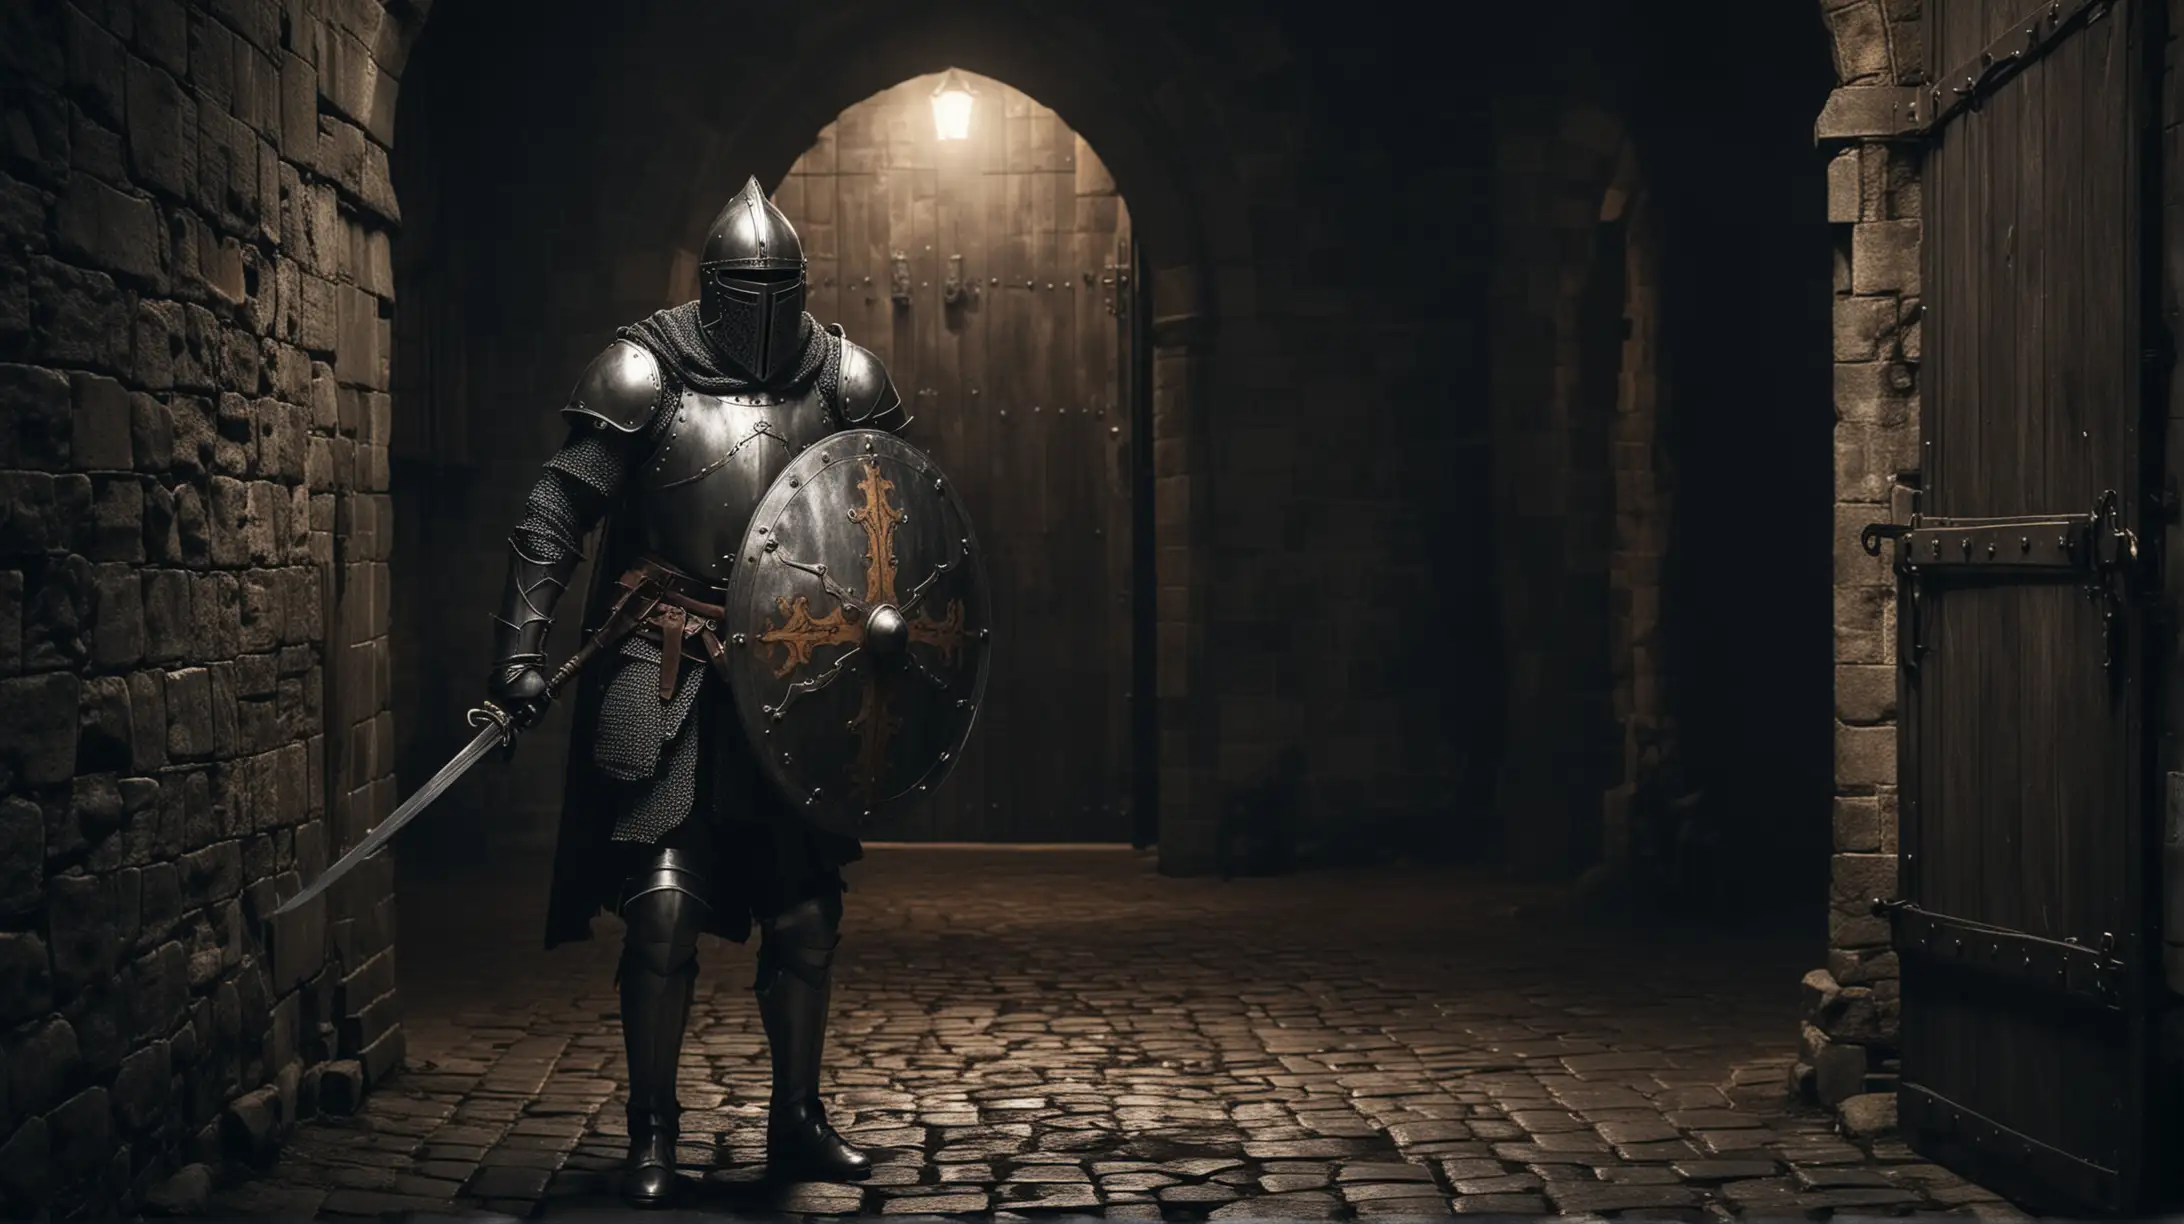 Medieval Knight Guarding Castle Door at Sinister Night